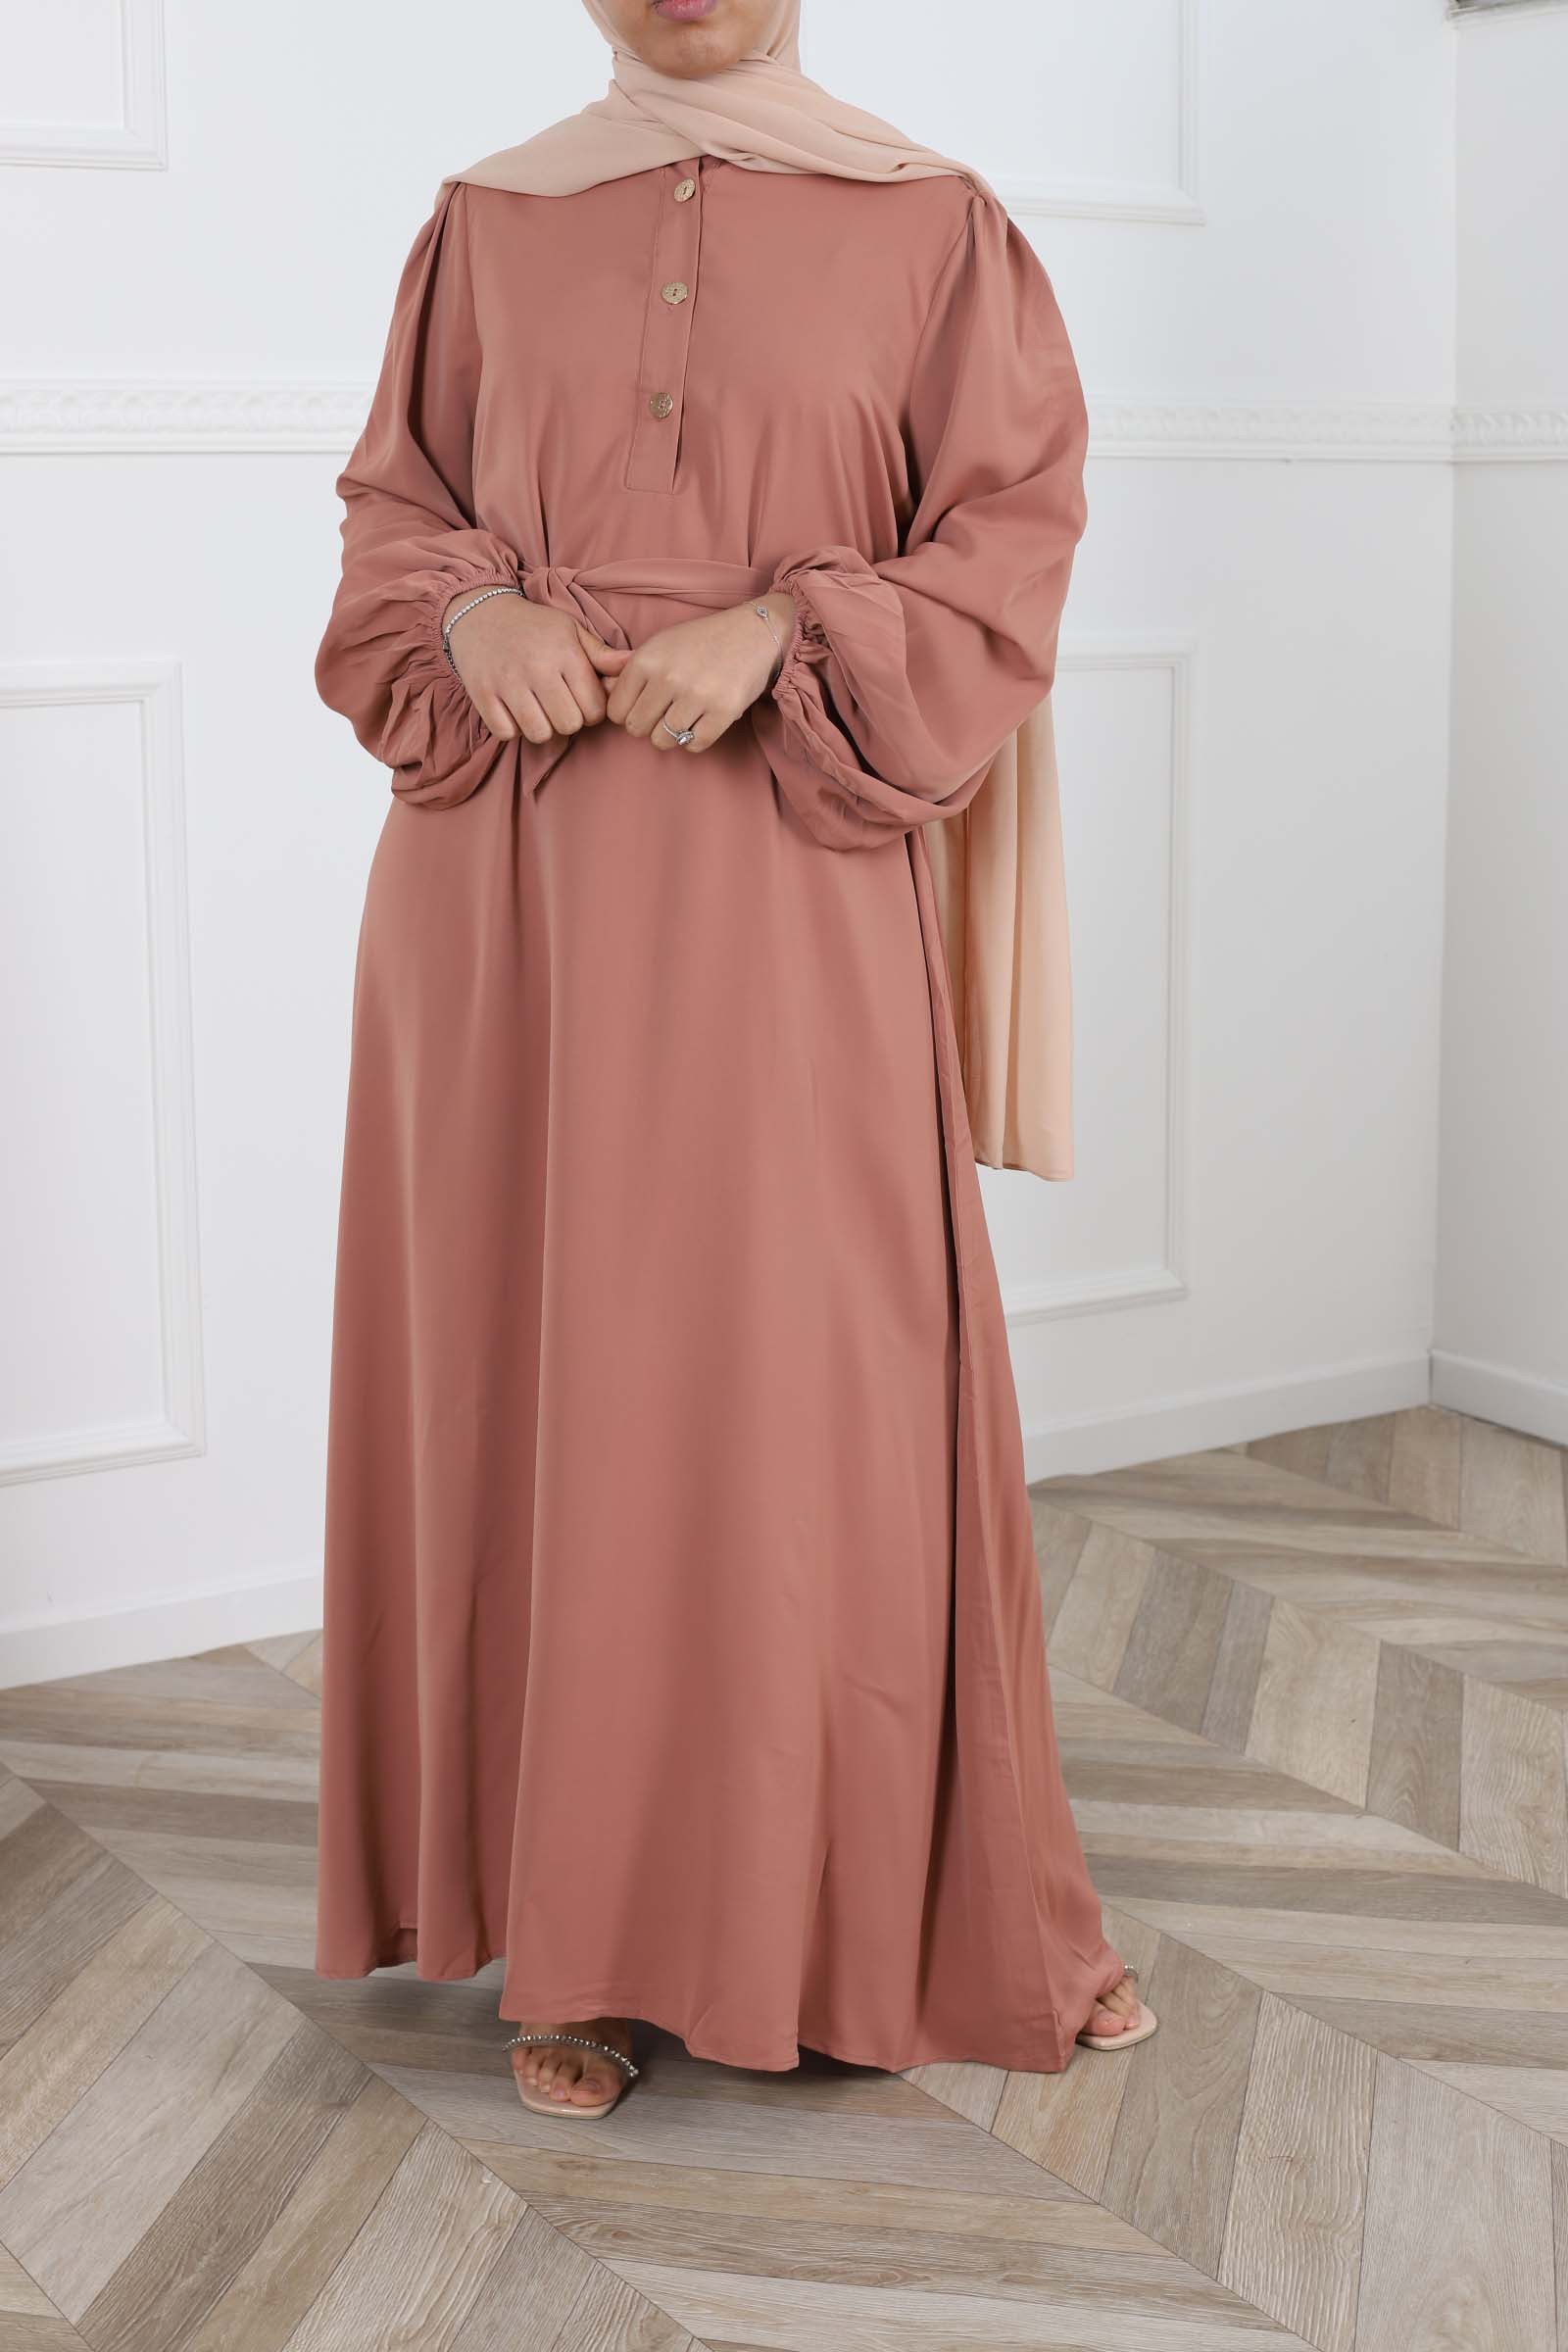 modest long dress, cheap muslim woman dress